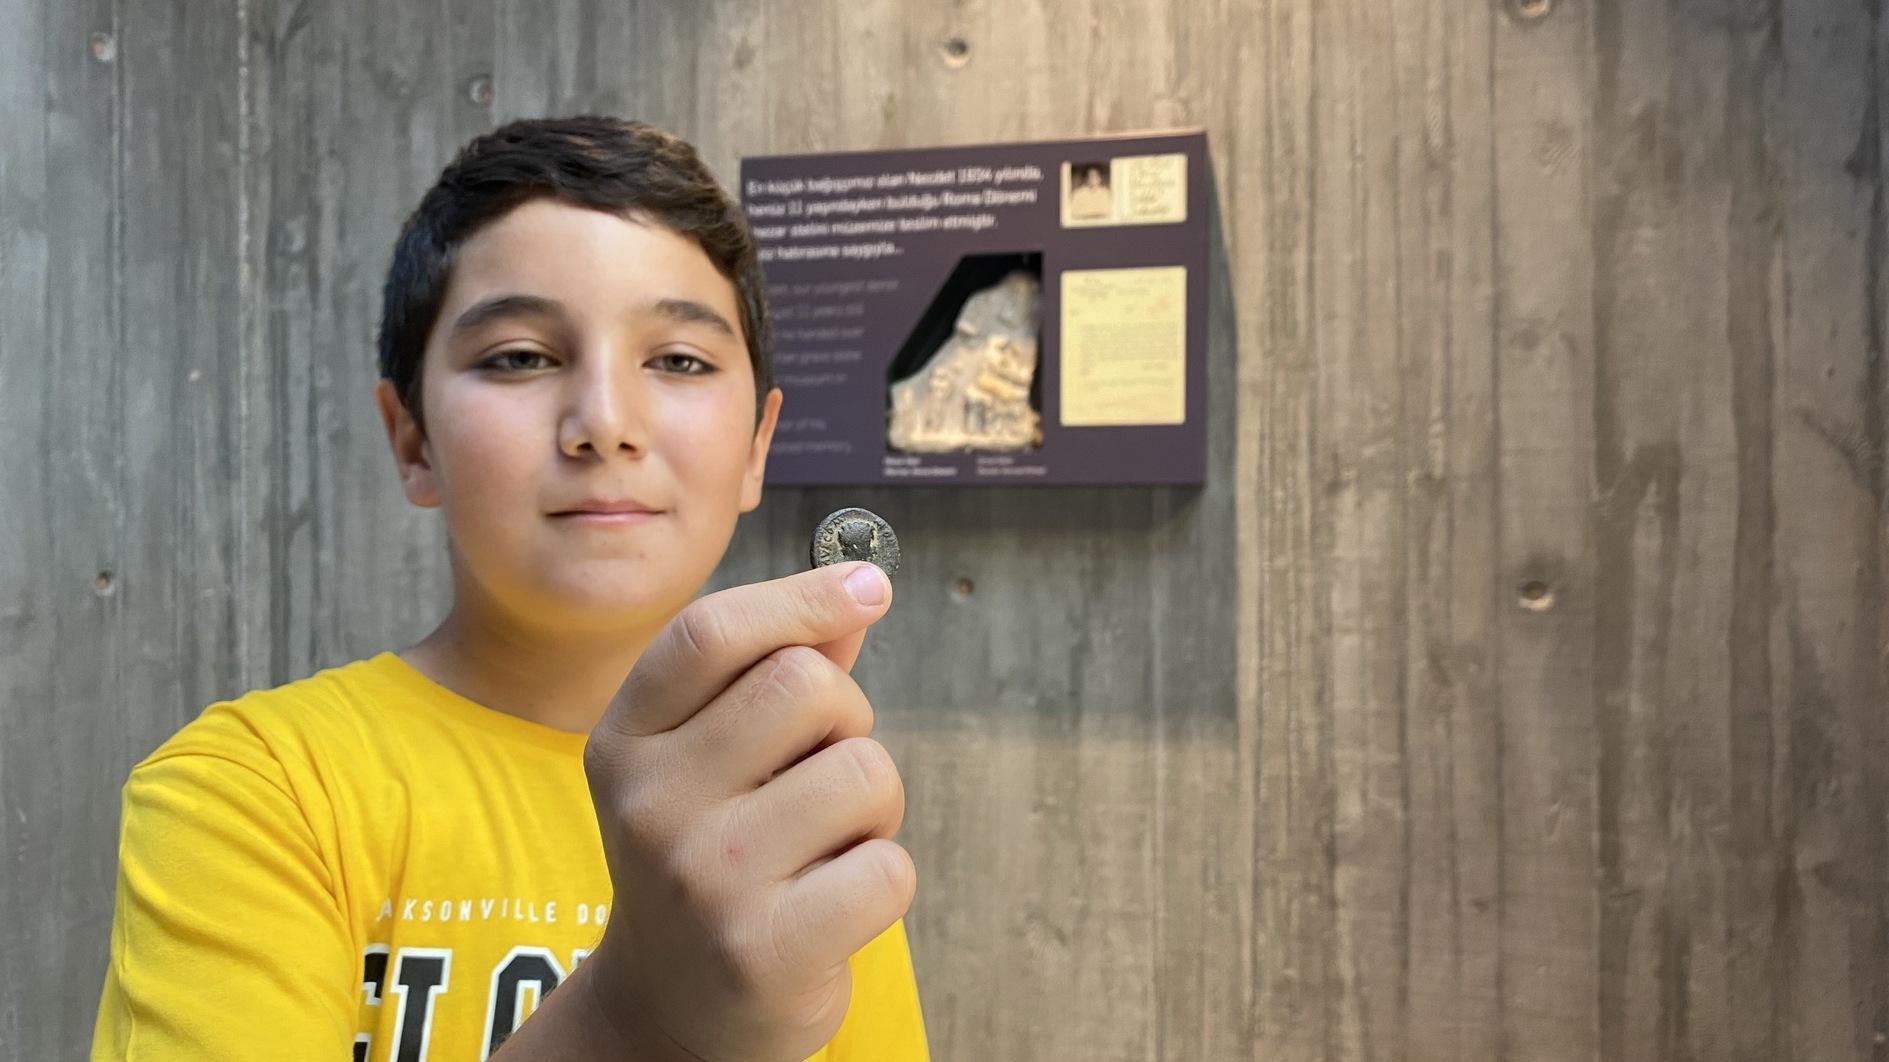 Munt uit het Romeinse tijdperk teruggegeven aan het museum door de jongste schenker